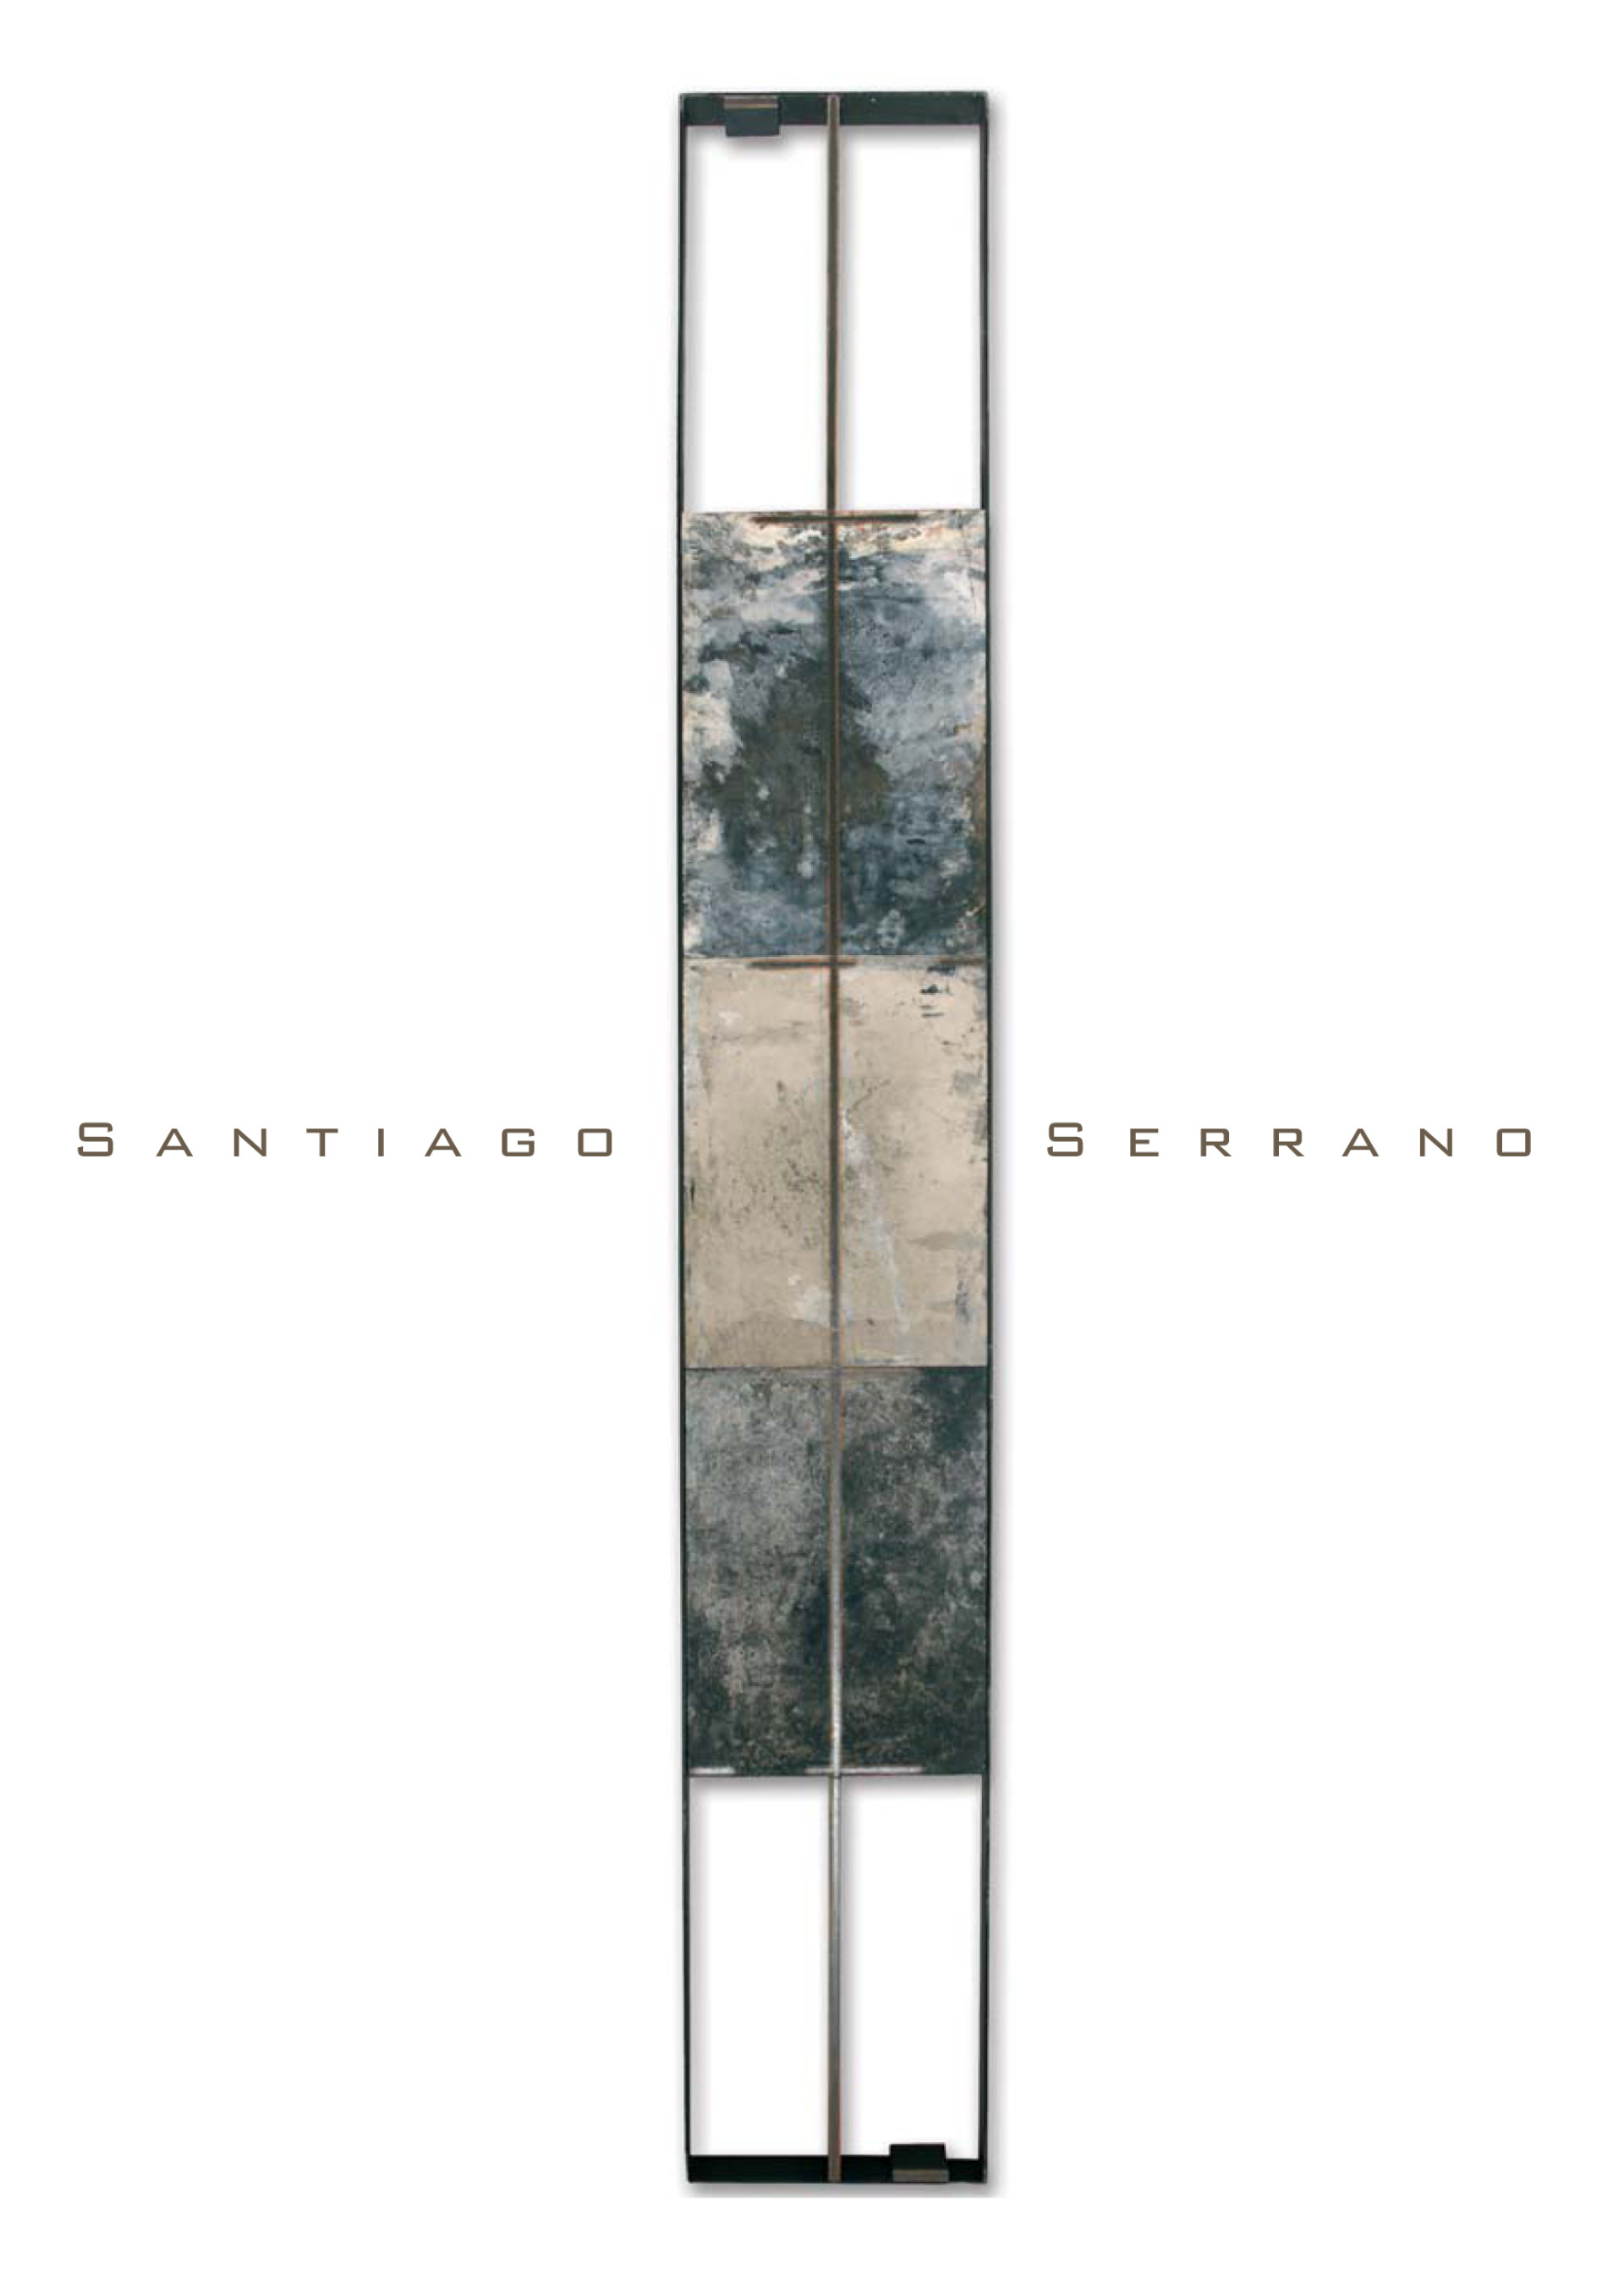 Los dones esenciales de Santiago Serrano